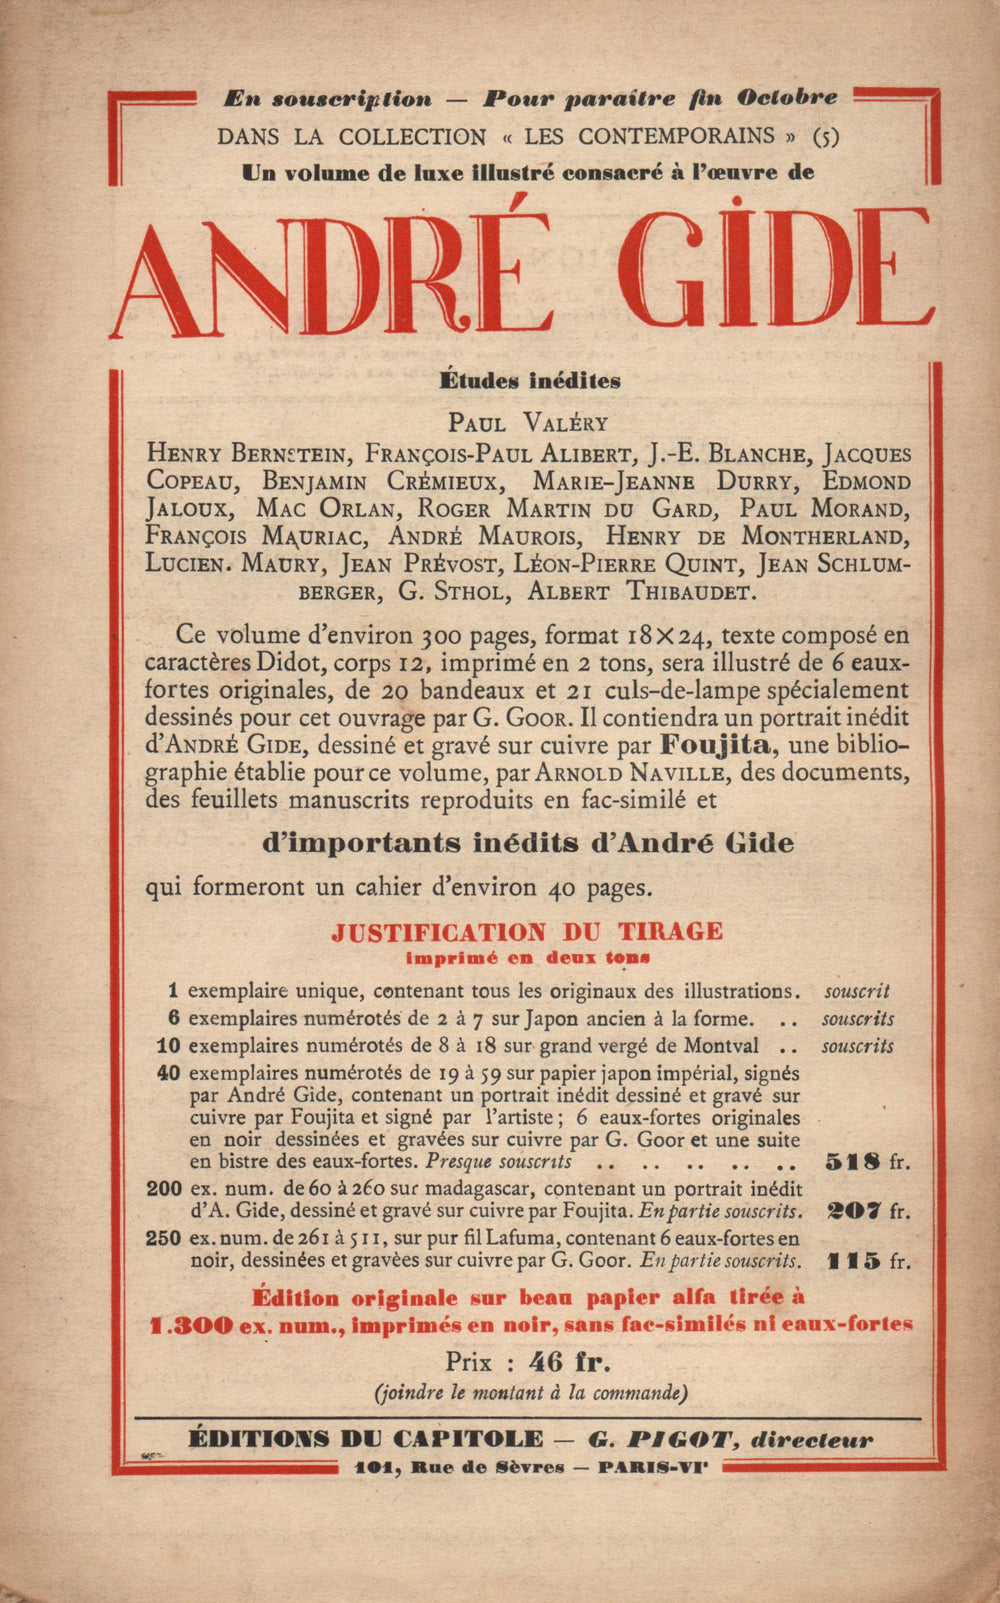 La Nouvelle Revue Française N' 169 (Octobre 1927)